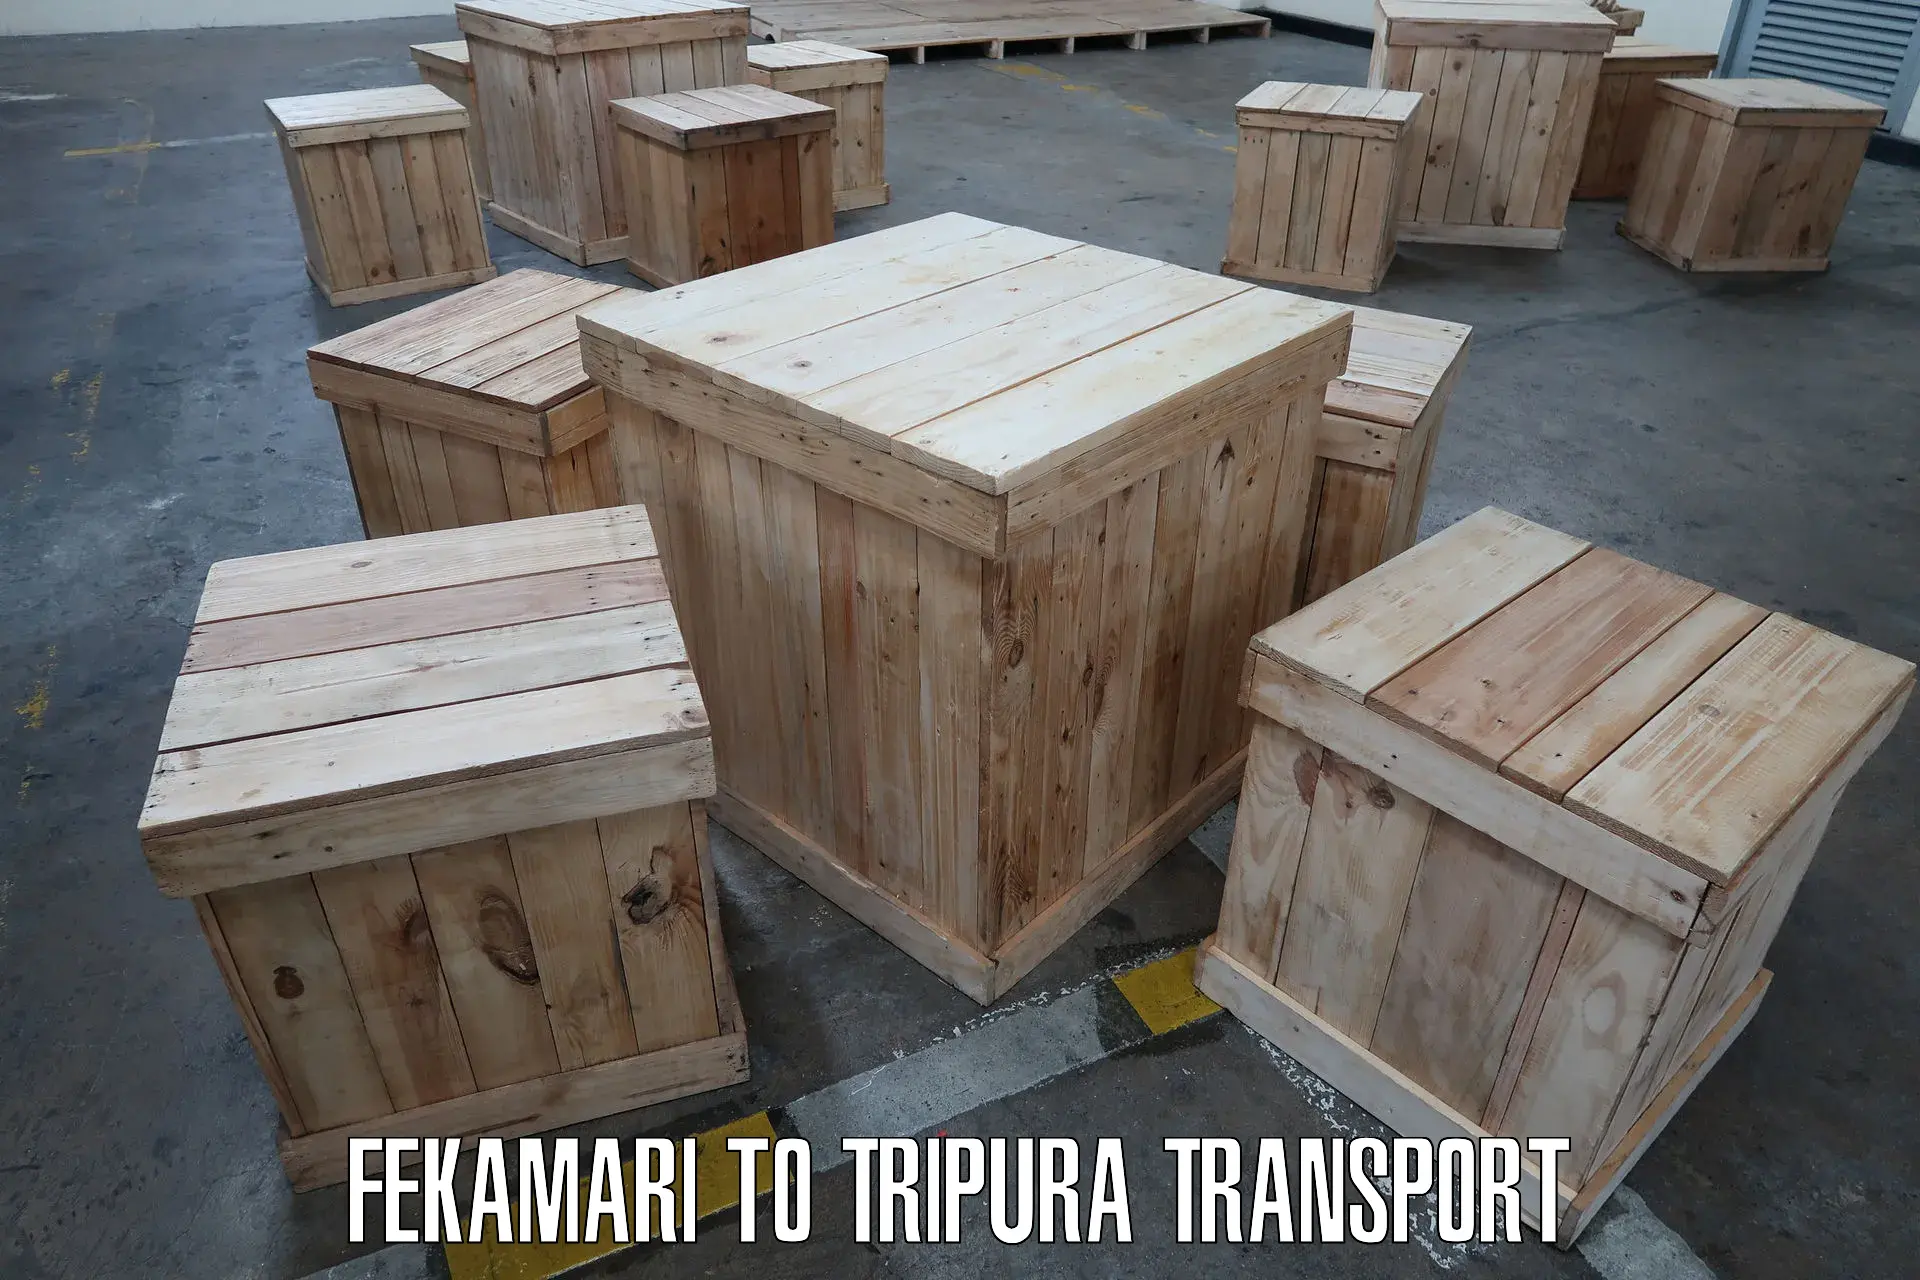 Nearest transport service Fekamari to IIIT Agartala